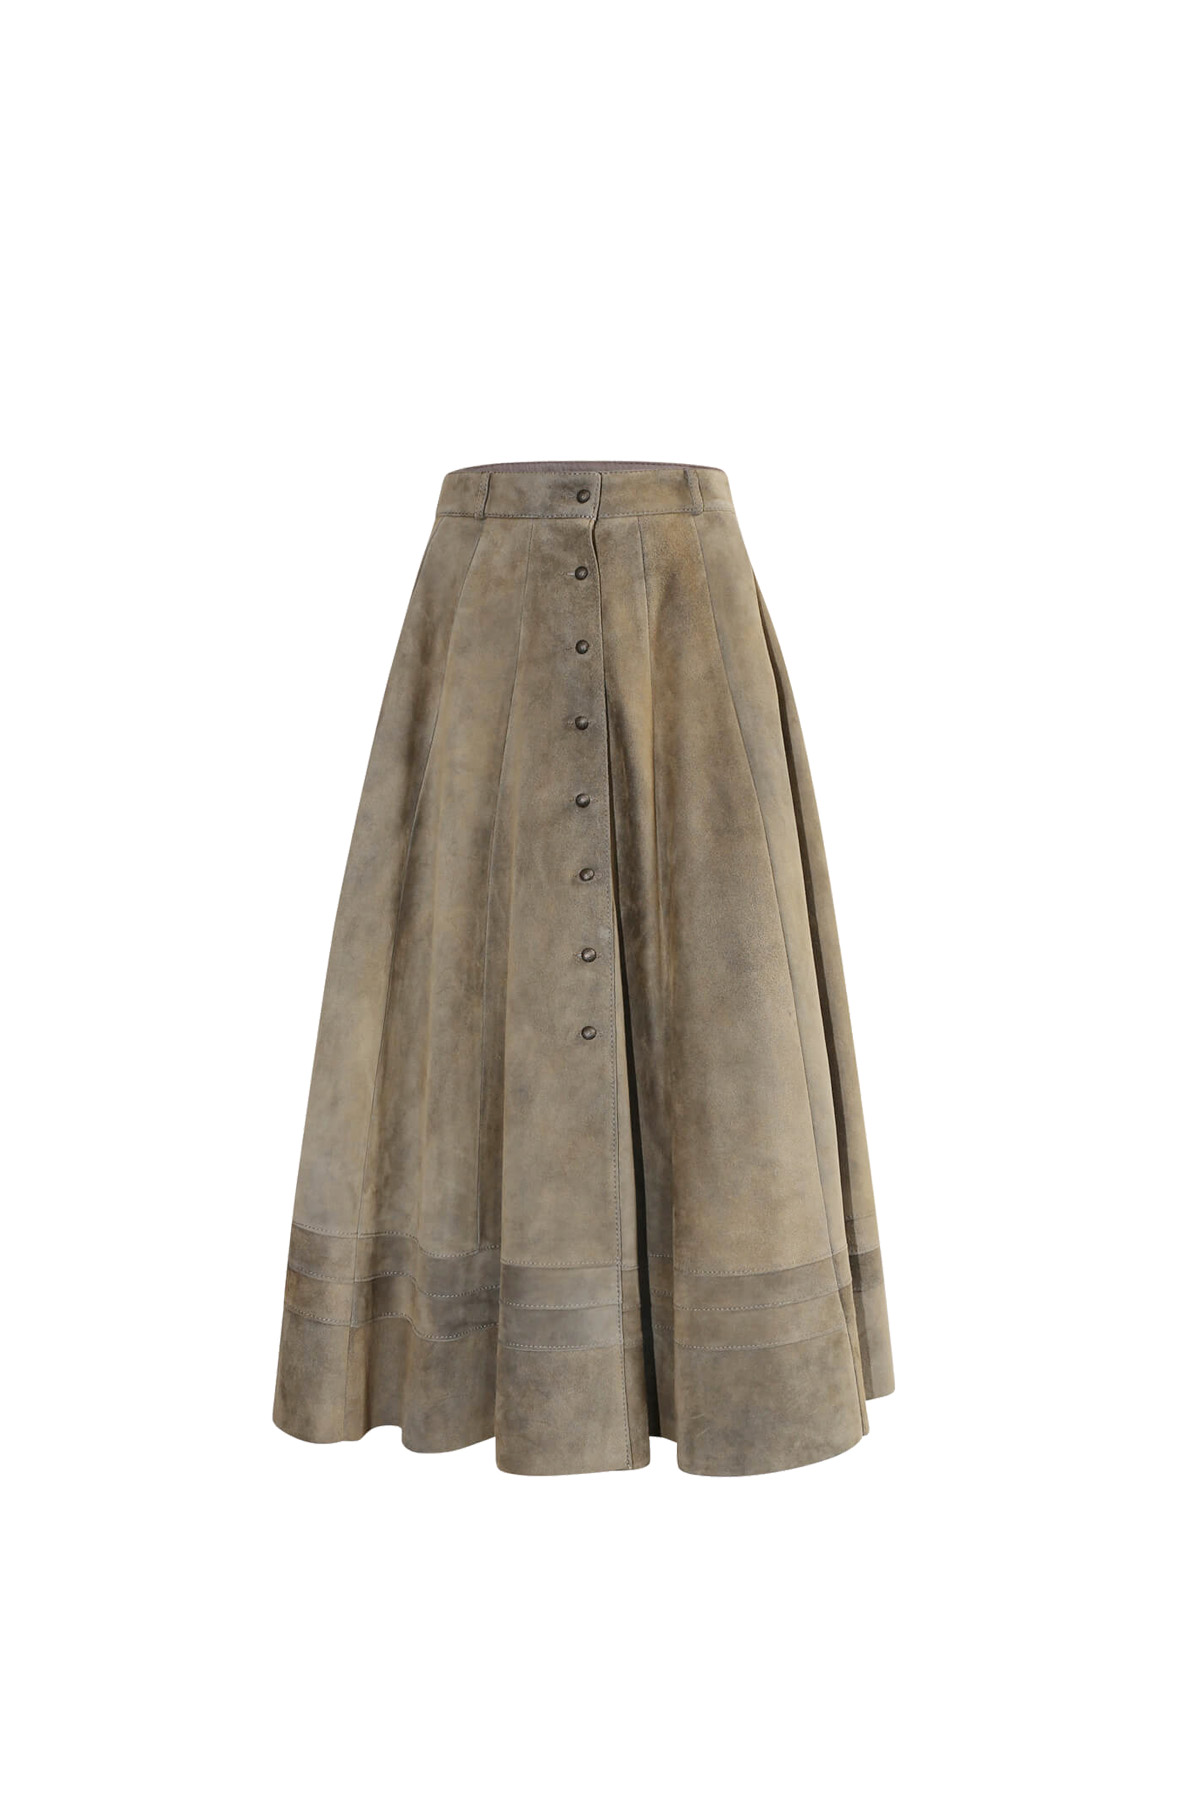 Goat Leather Skirt “Daisy”, inca